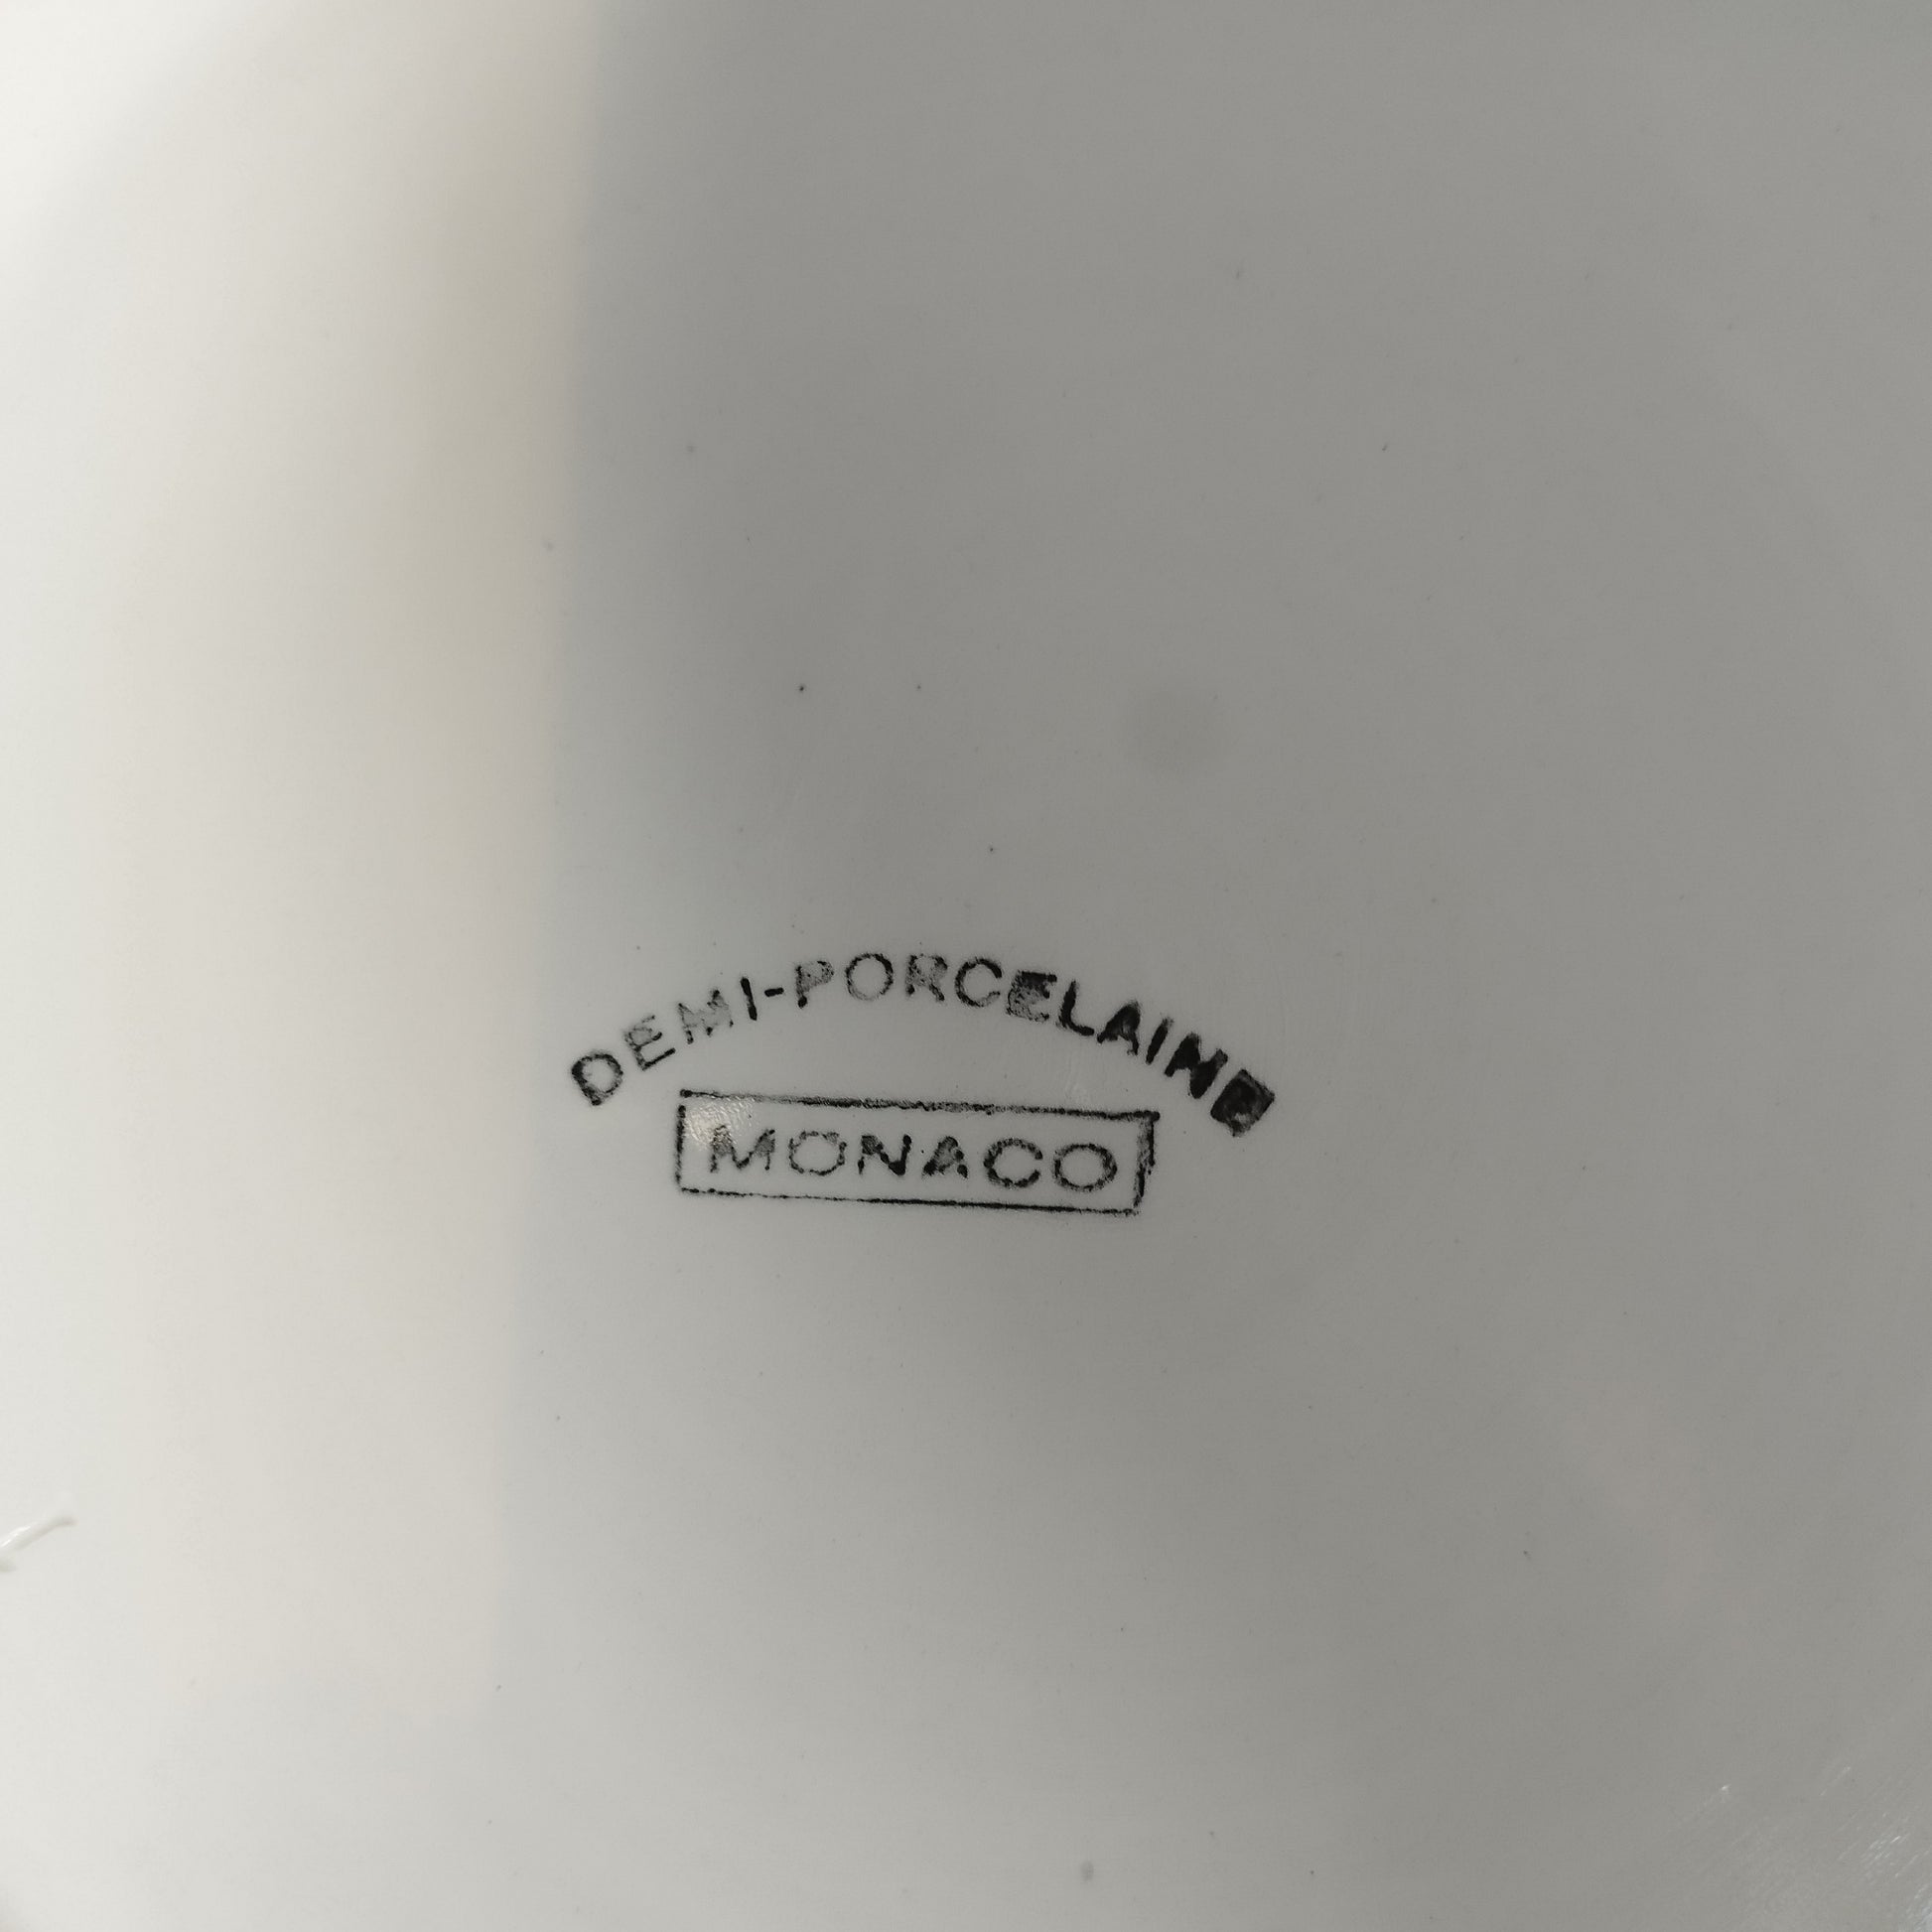 Soupière Demi porcelaine Monaco